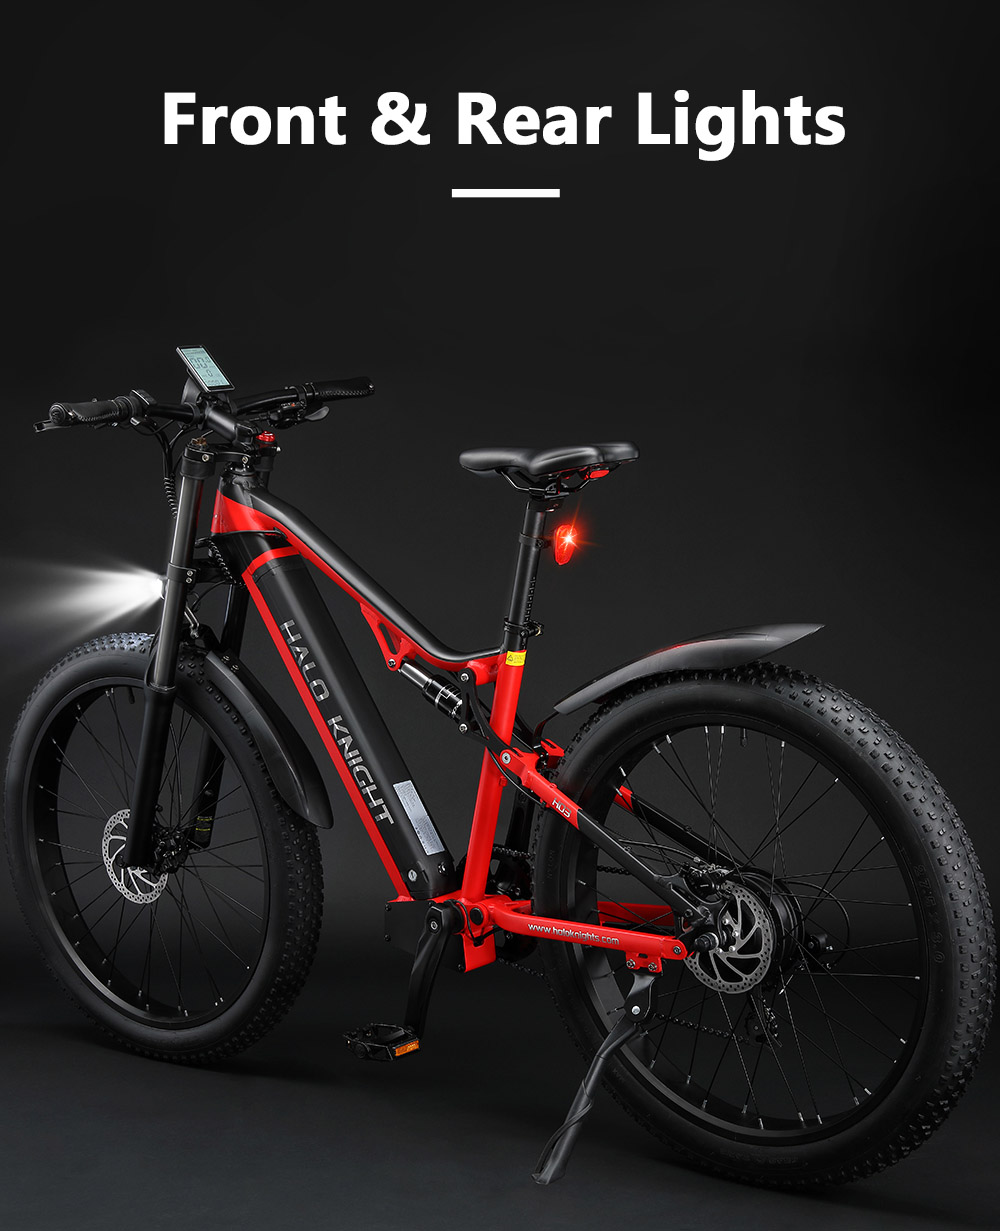 Halo Knight H03 Electric Bike, 1000W motor, 48V 19,2Ah batéria, 27,5*3.0-palcové pneumatiky, max. rýchlosť 50 km/h, max. dojazd 90 km, hydraulické brzdy, 7-stupňová prevodovka Shimano - červená